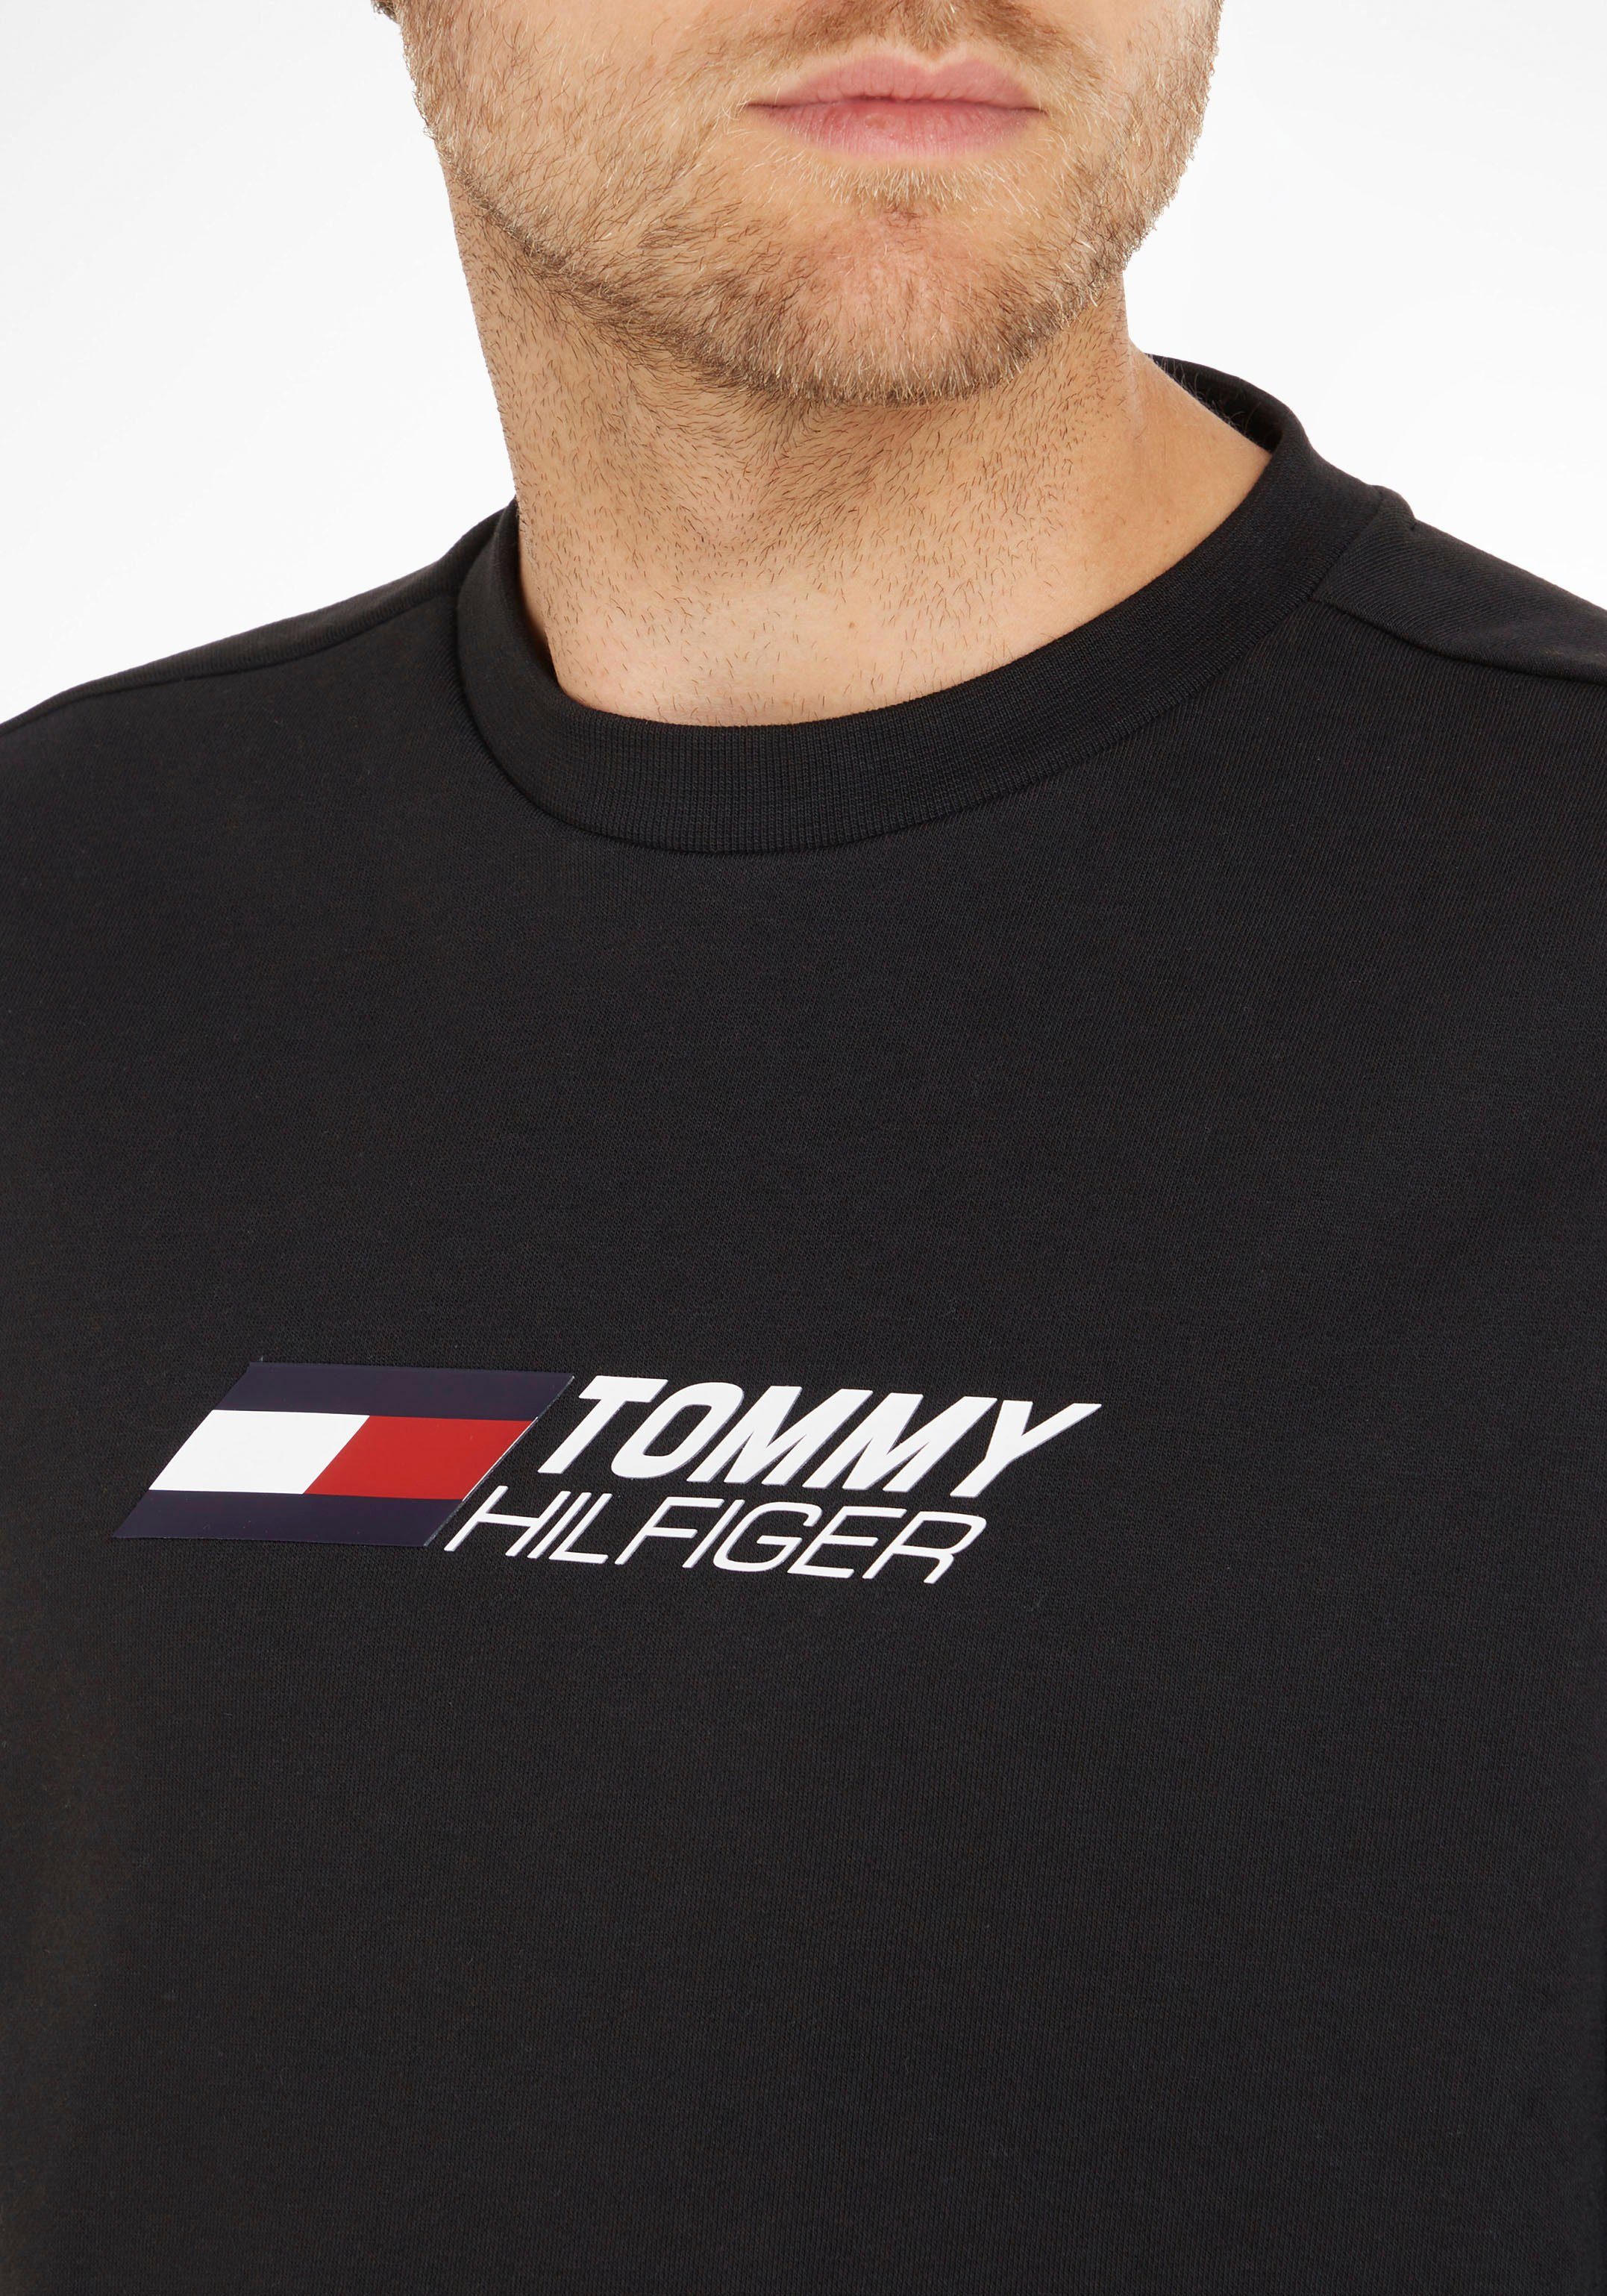 Sweatshirt Hilfiger CREW Tommy Sport black ESSENTIALS